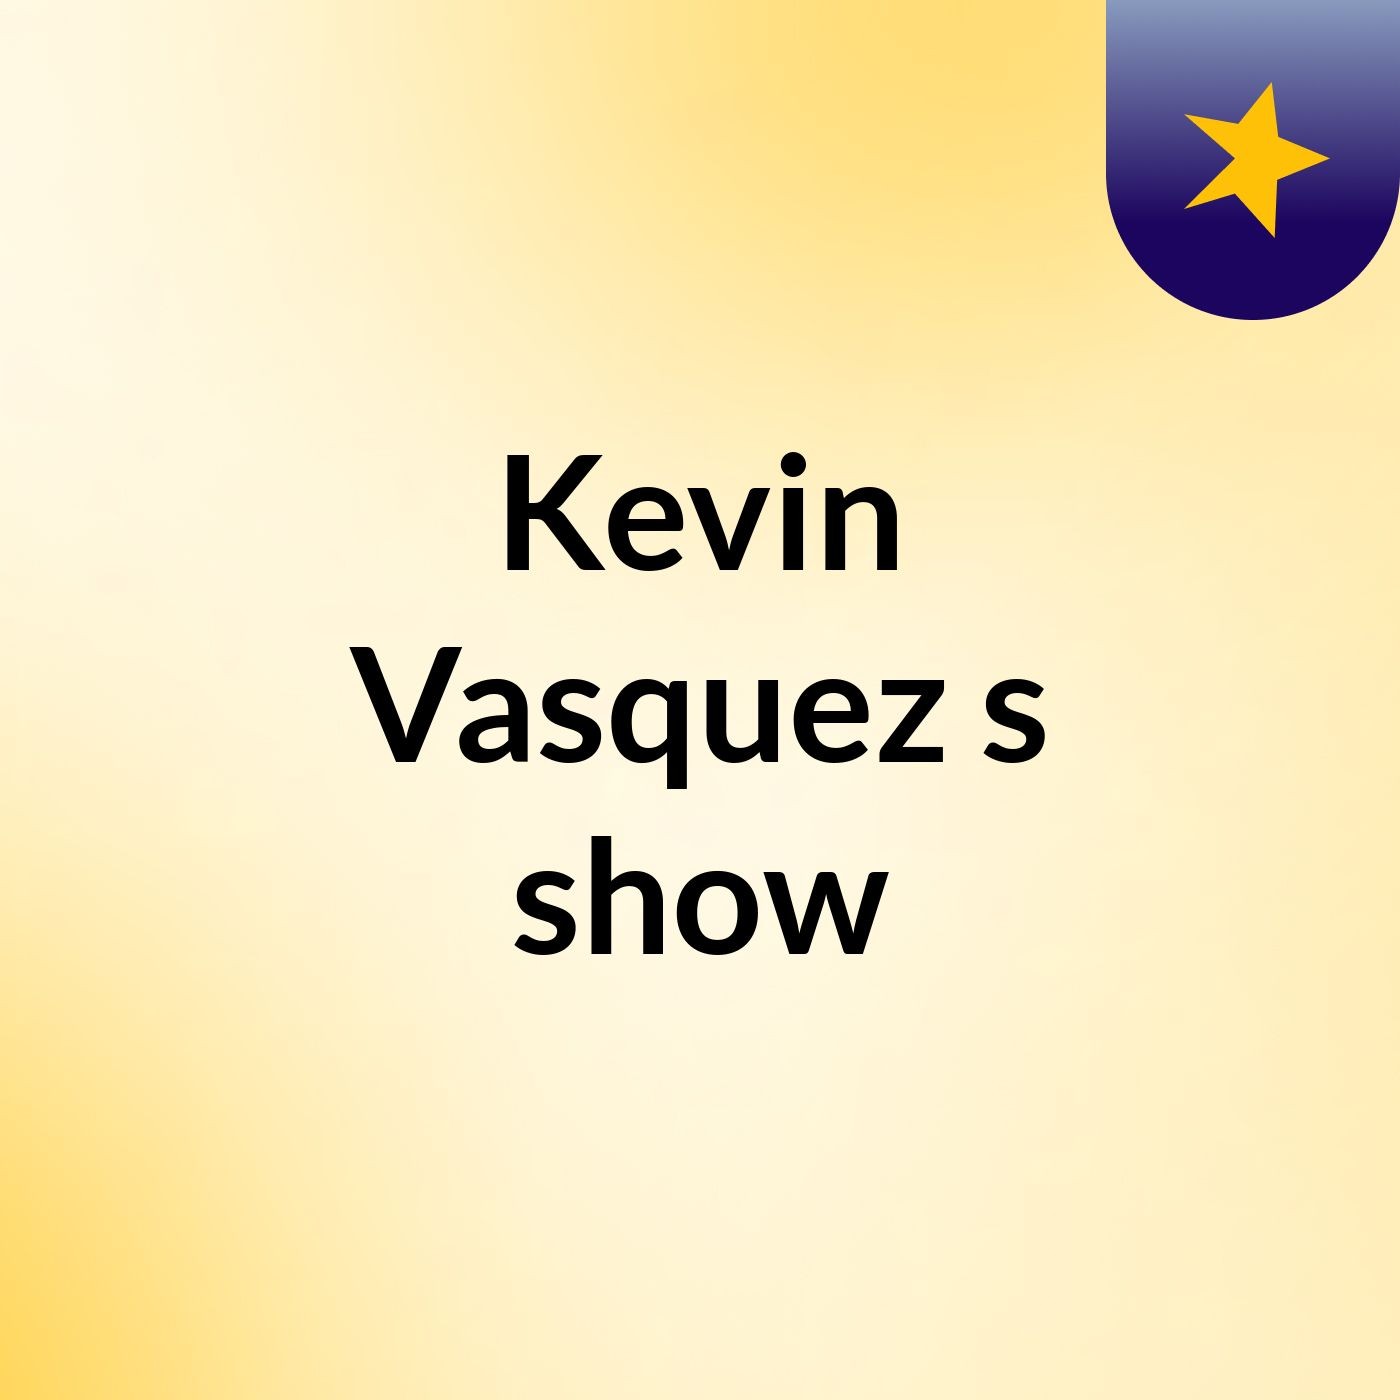 Kevin Vasquez's show